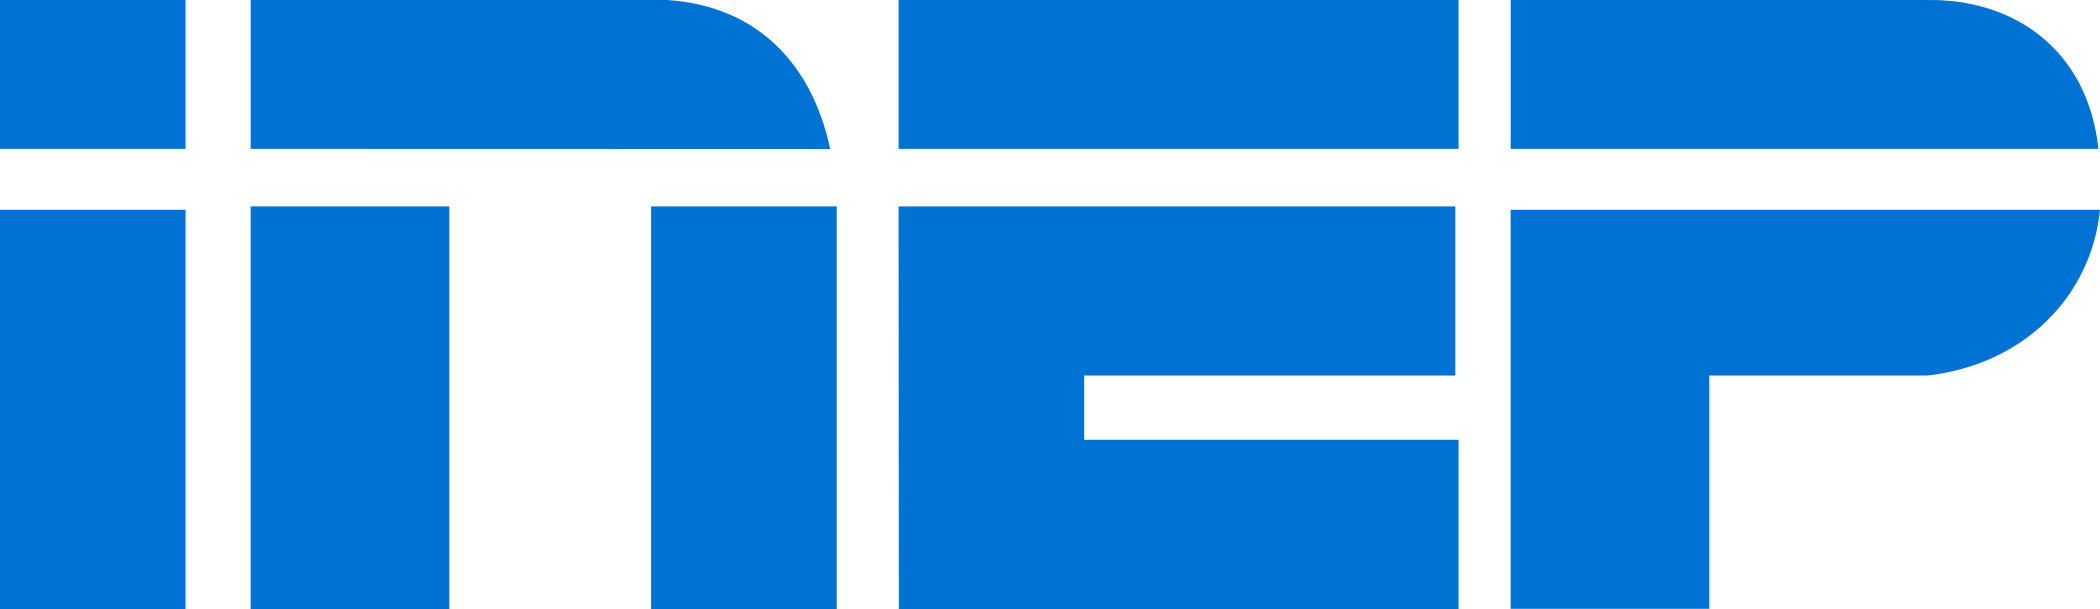 Inep Logo, Instituto Nacional de Estudos e Pesquisas logo.